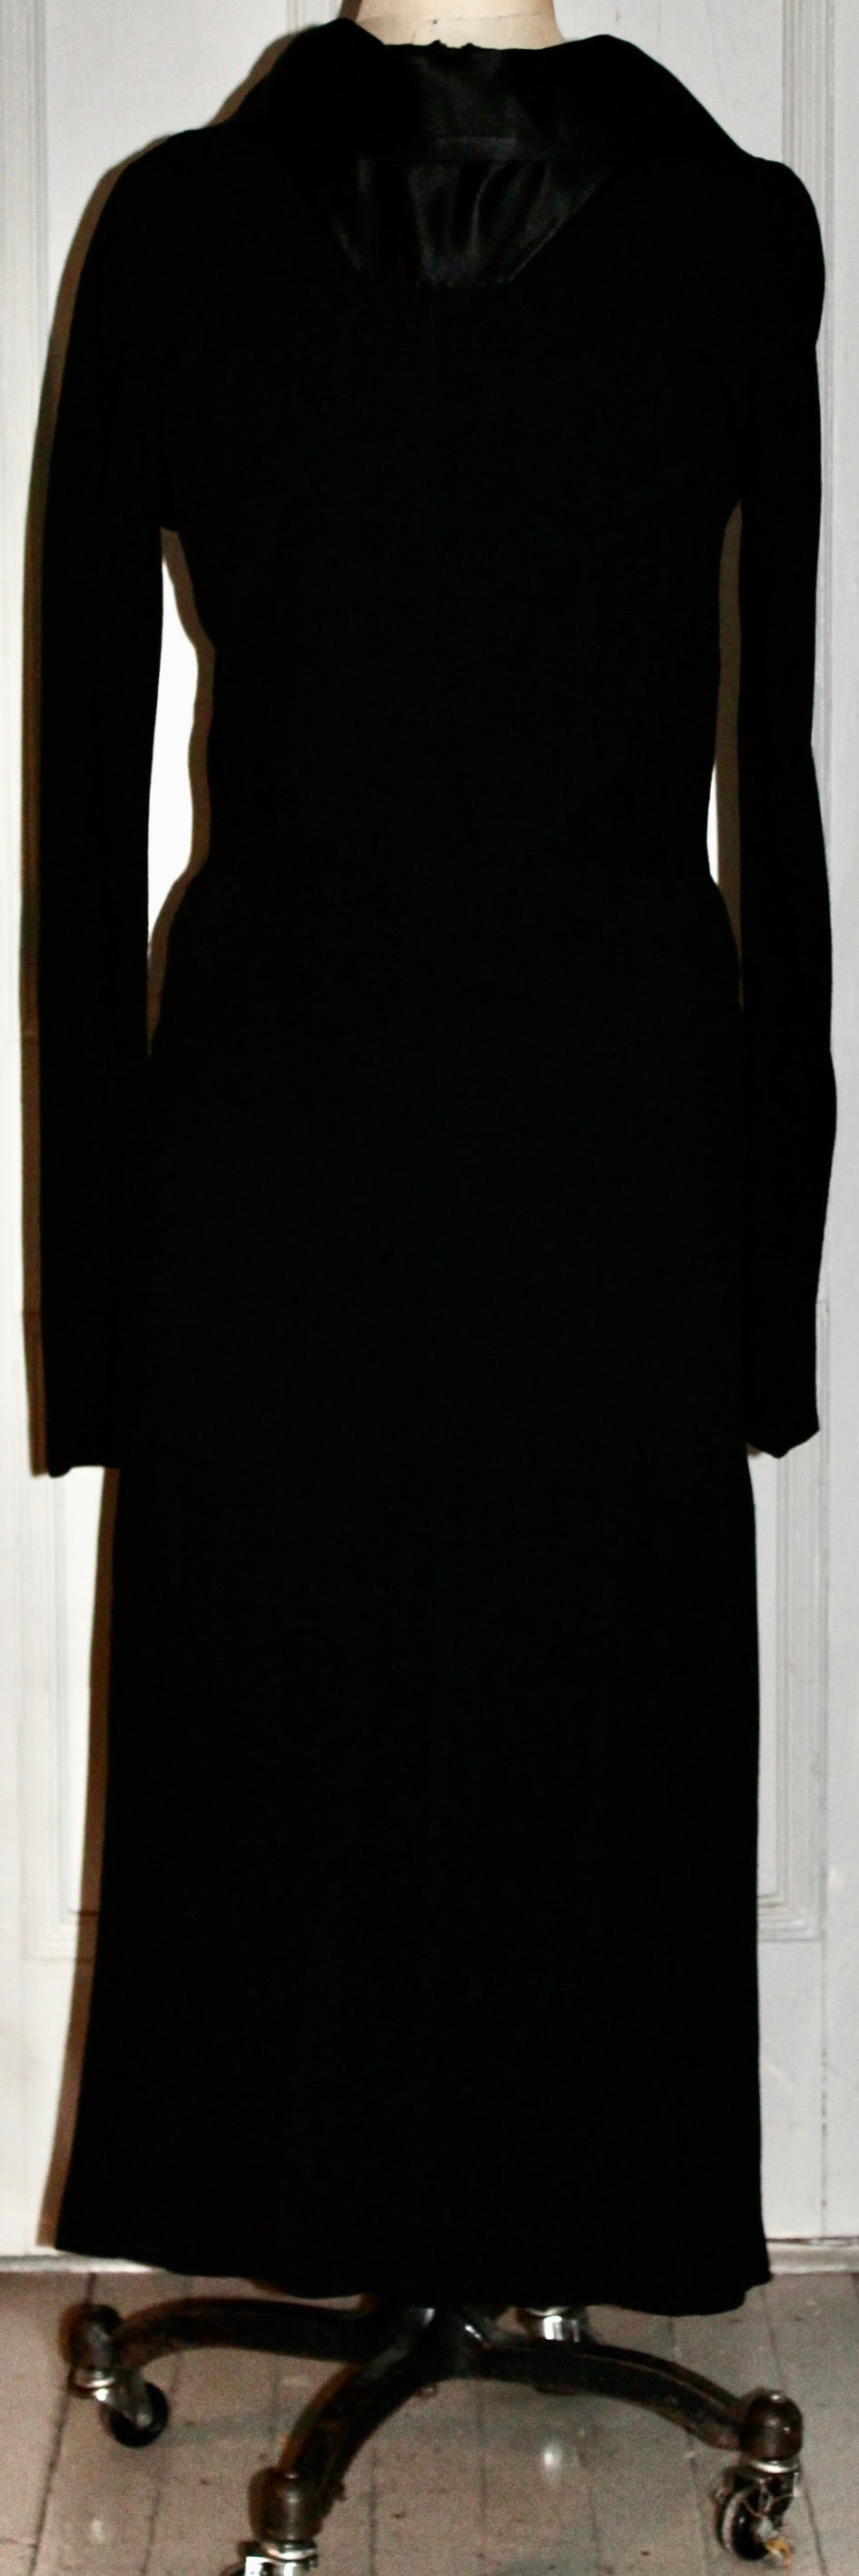 De la maison FranceVramant Paris (fondée en 1935), une robe du soir Haute Couture des années 1930 en crêpe de soie.
conçu par Madeleine Vramant. Taille approximative EU 38
